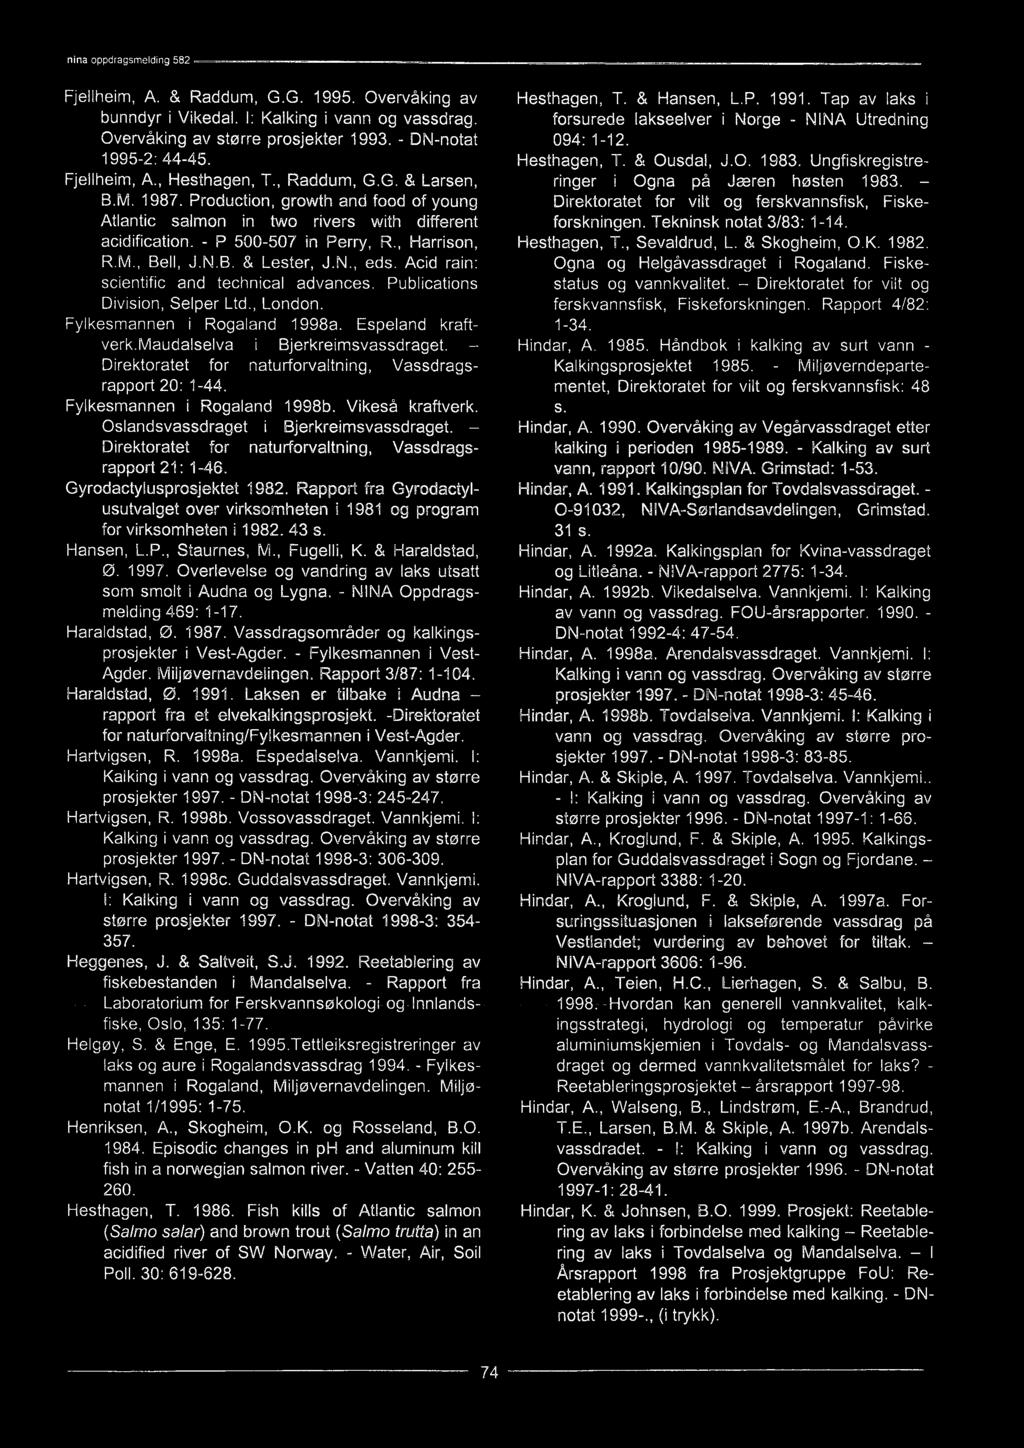 - Direktoratet for naturforvaltning, Vassdragsrapport 21: 1-46. Gyrodactylusprosjektet 1982. Rapport fra Gyrodactylusutvalget over virksomheten i 1981 og program for virksomheten 11982. 43 s.